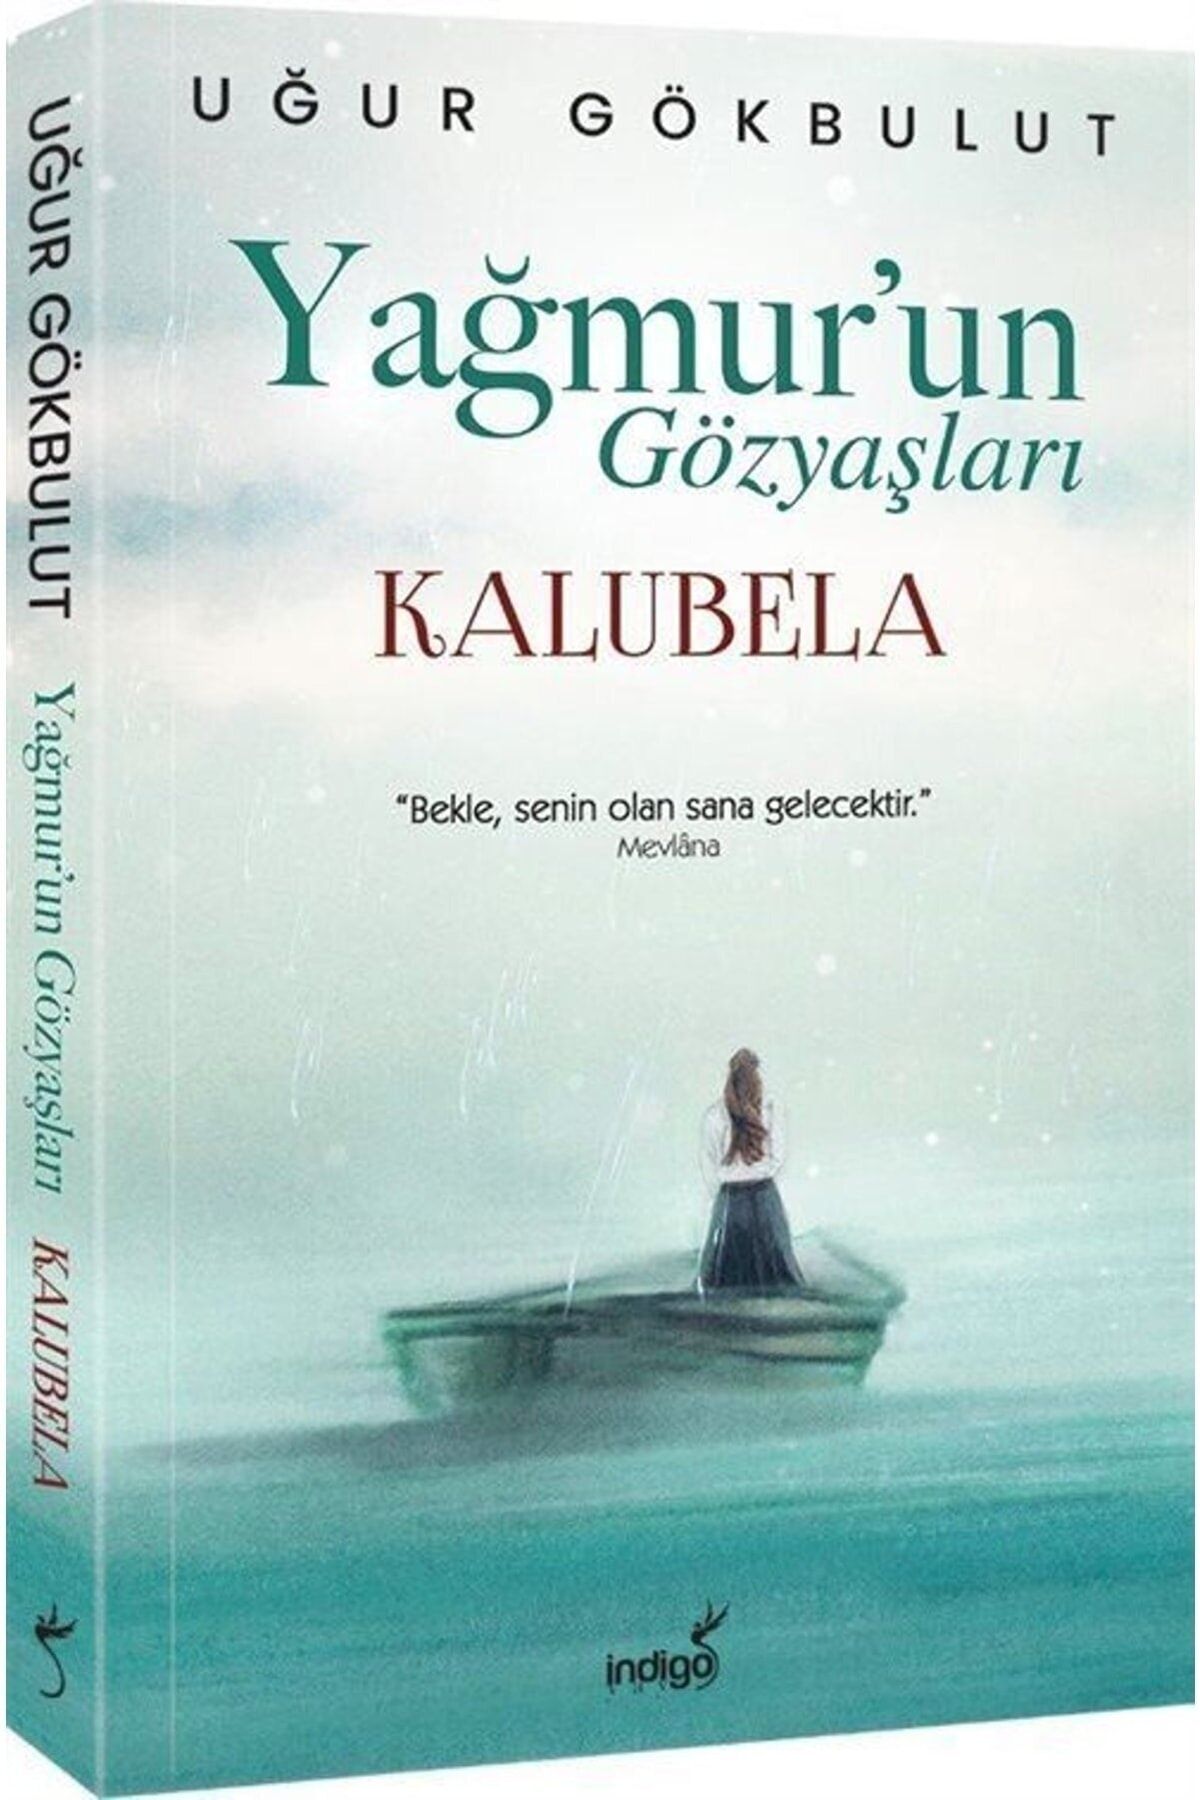 İndigo Kitap Yağmur’un Gözyaşları - Kalubela, Uğur Gökbulut, Indigo Kitap, Yağmur’un Gözyaşları - Kalubela Kitabı